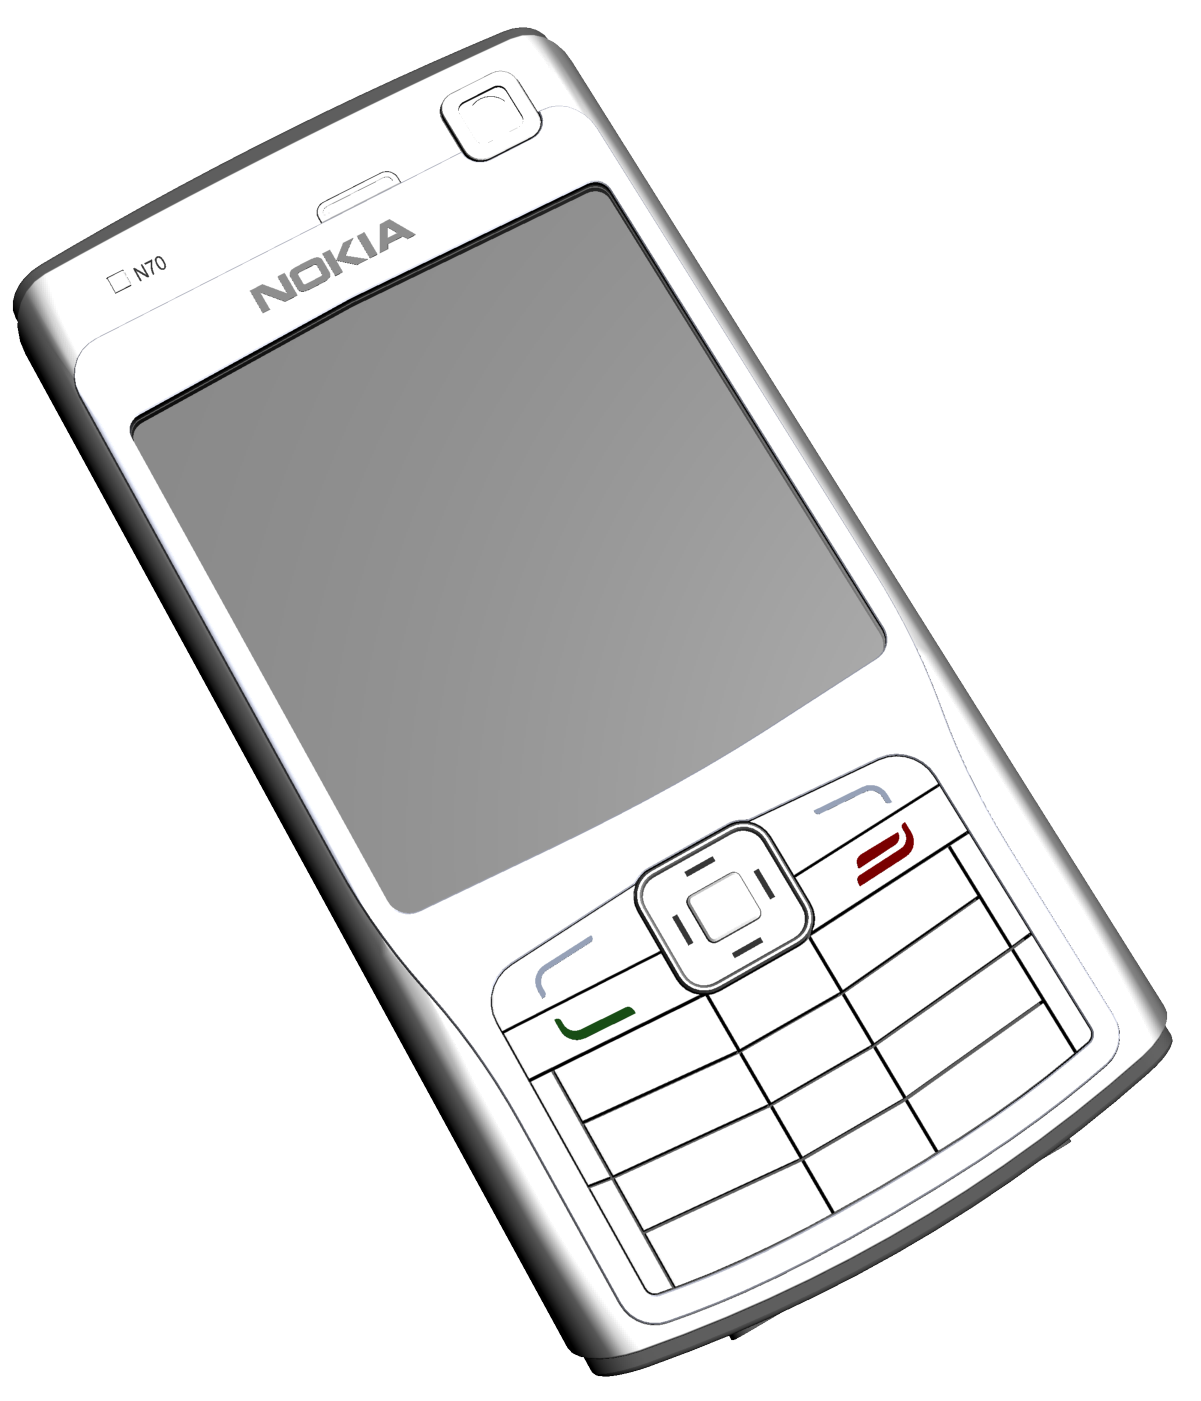 Phone nokia c7